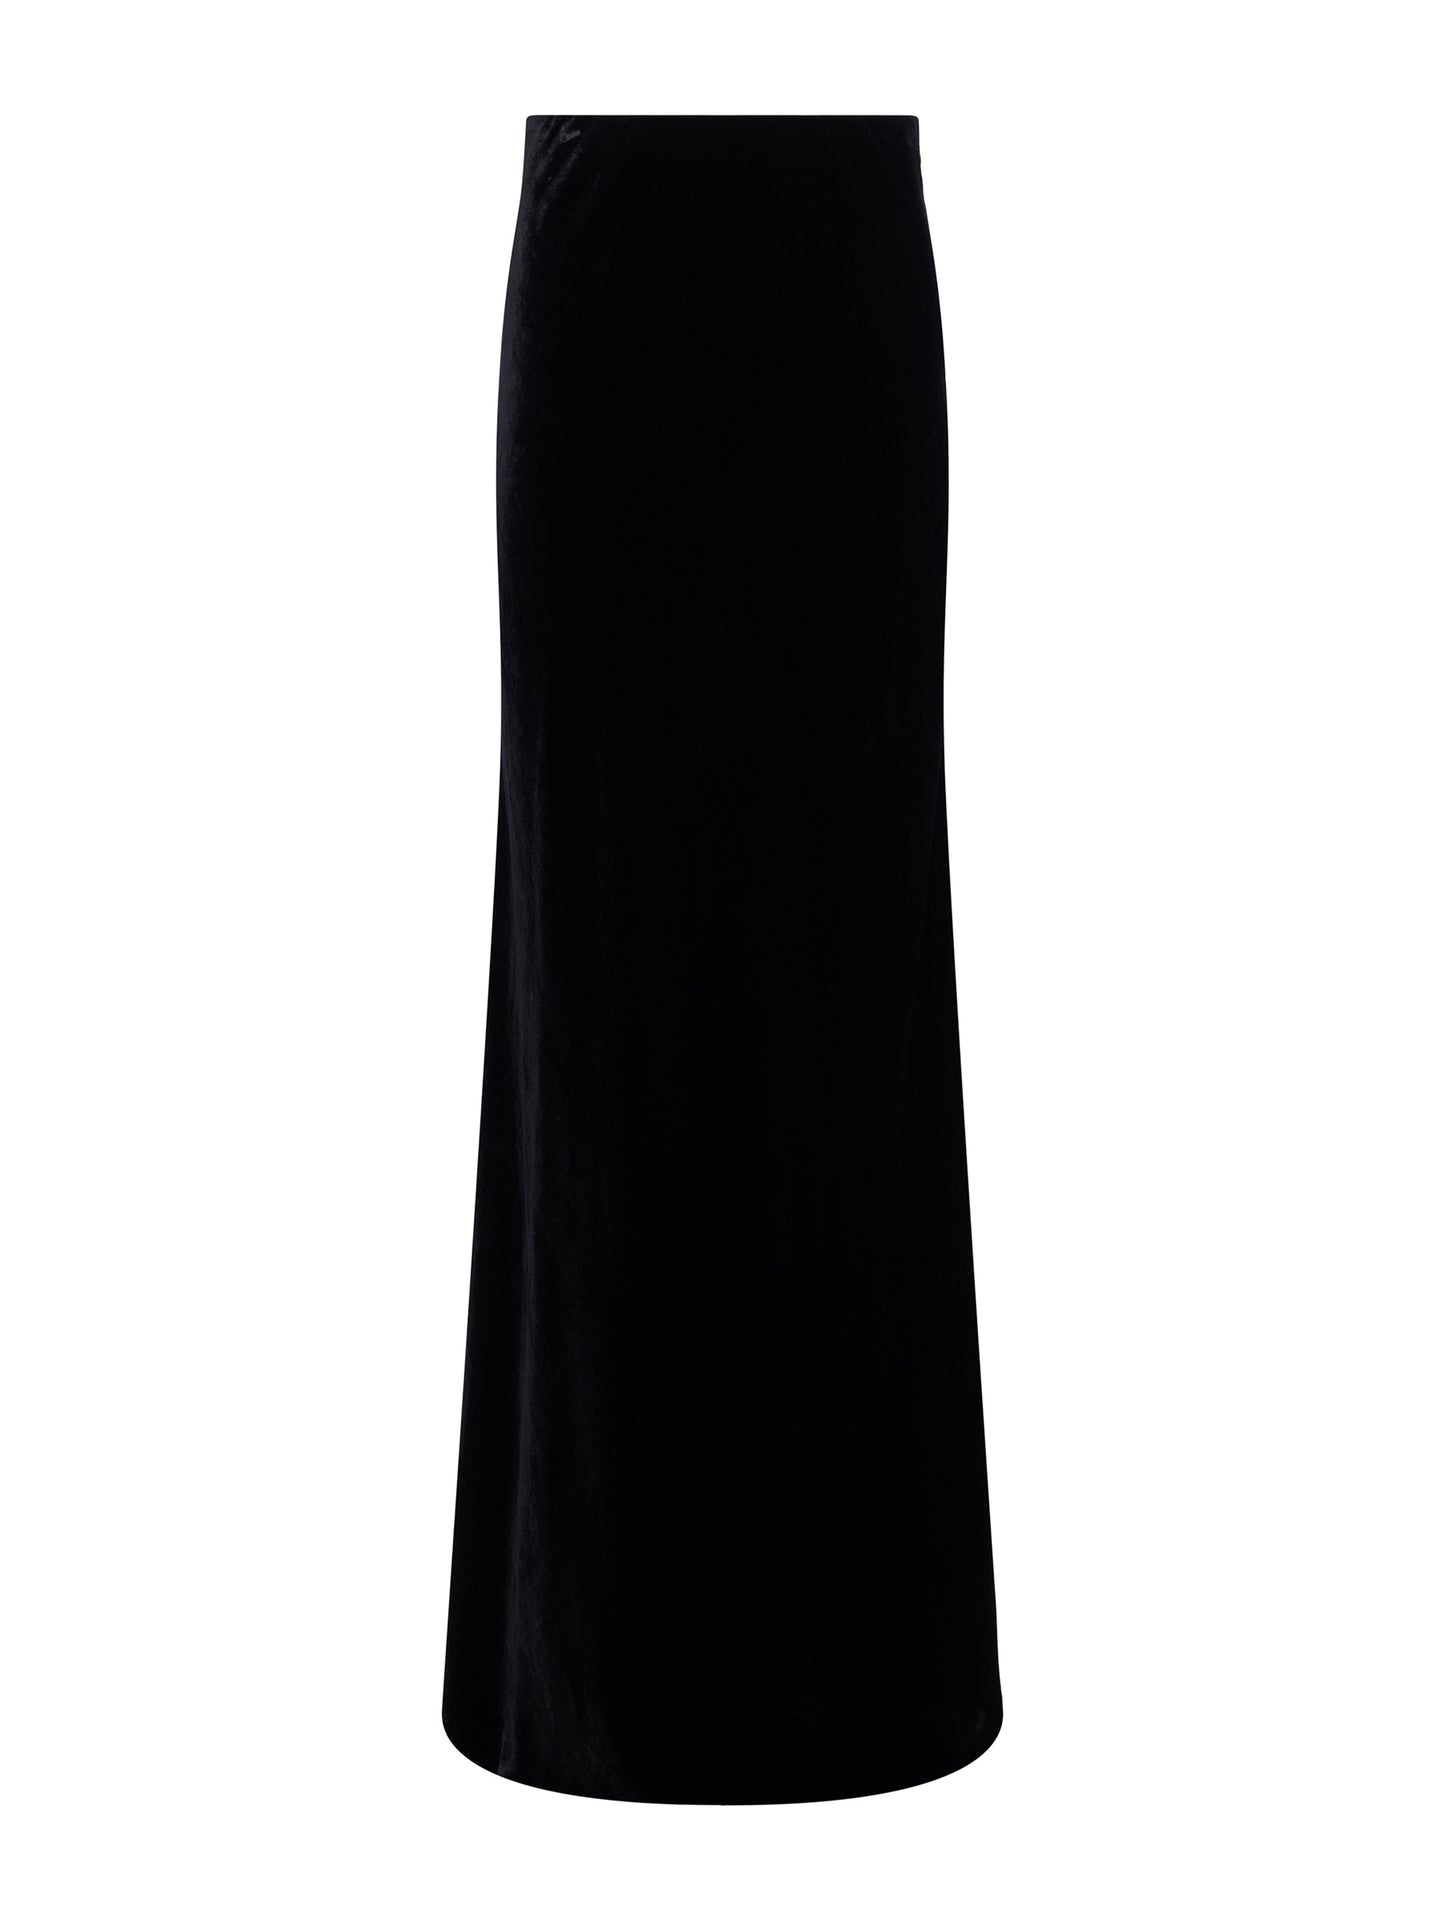 Lagence Zeta Long Skirt